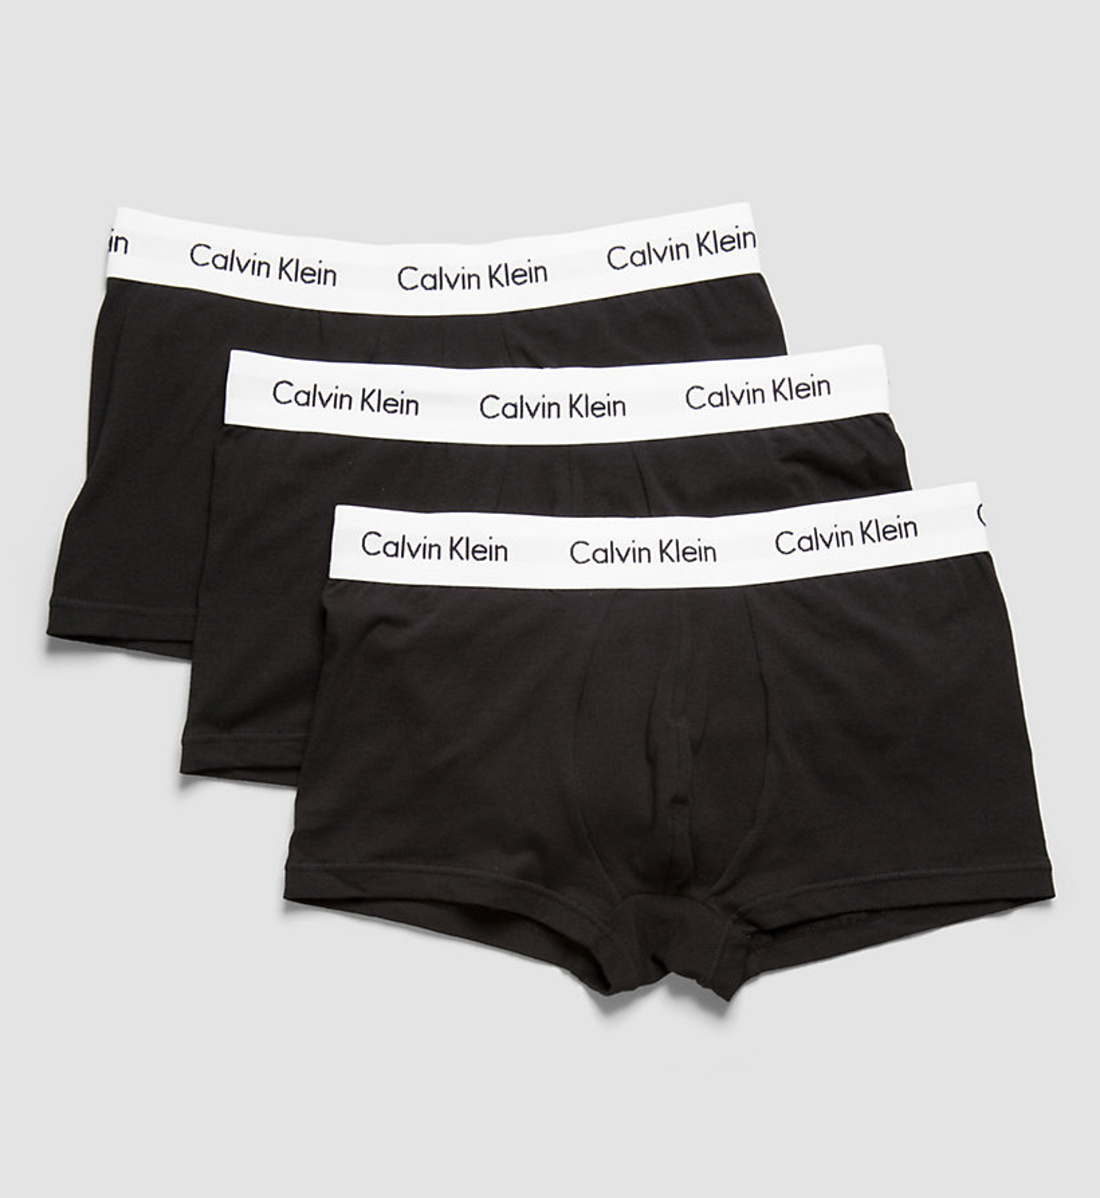 Calvin Klein pánské černé boxerky 3pack - S (001)